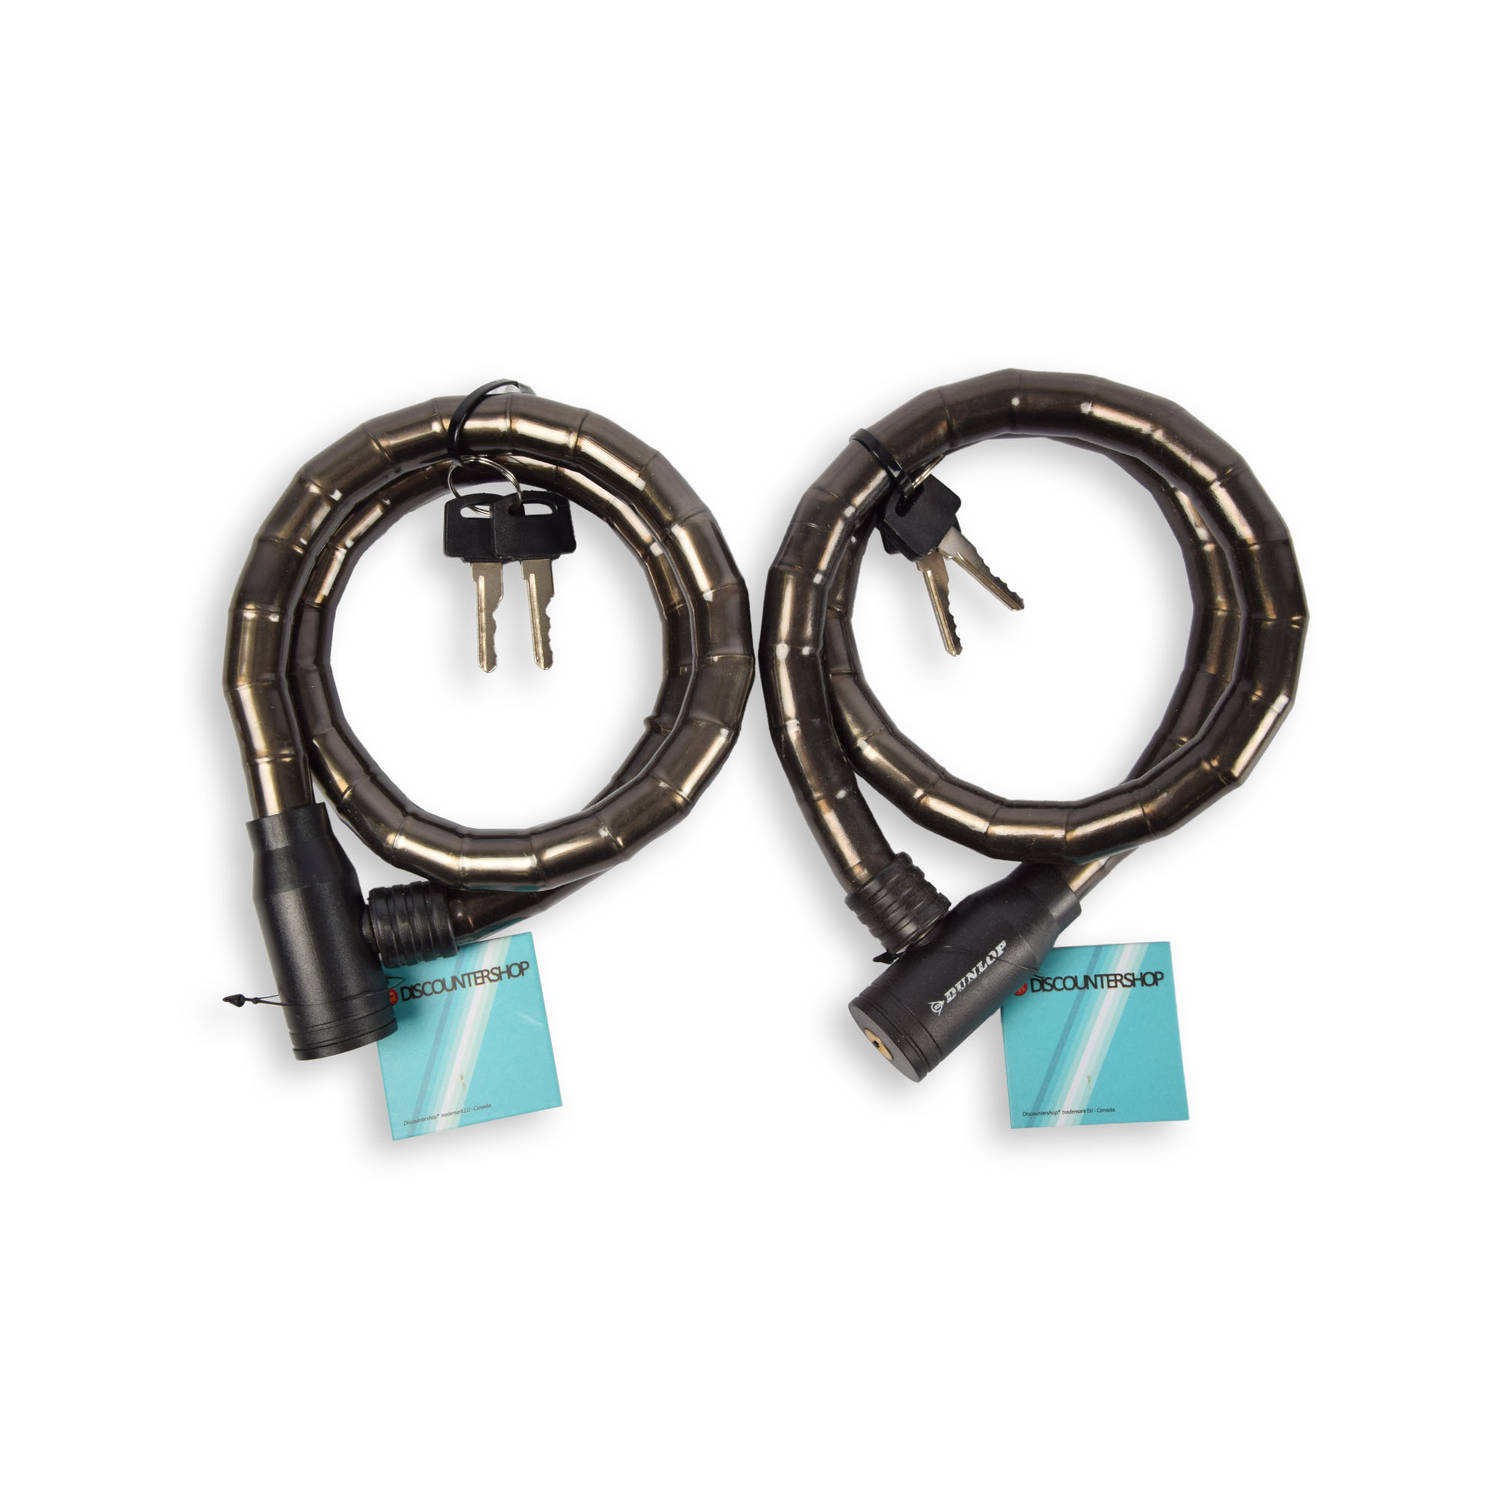 Ultieme Beveiliging: Zwarte Fietsslot Kabelslot Set - Duurzaam Metaal & Plastic, 80cm, Inclusief 4 Sleutels - Voor Fietsen & Accessoires!